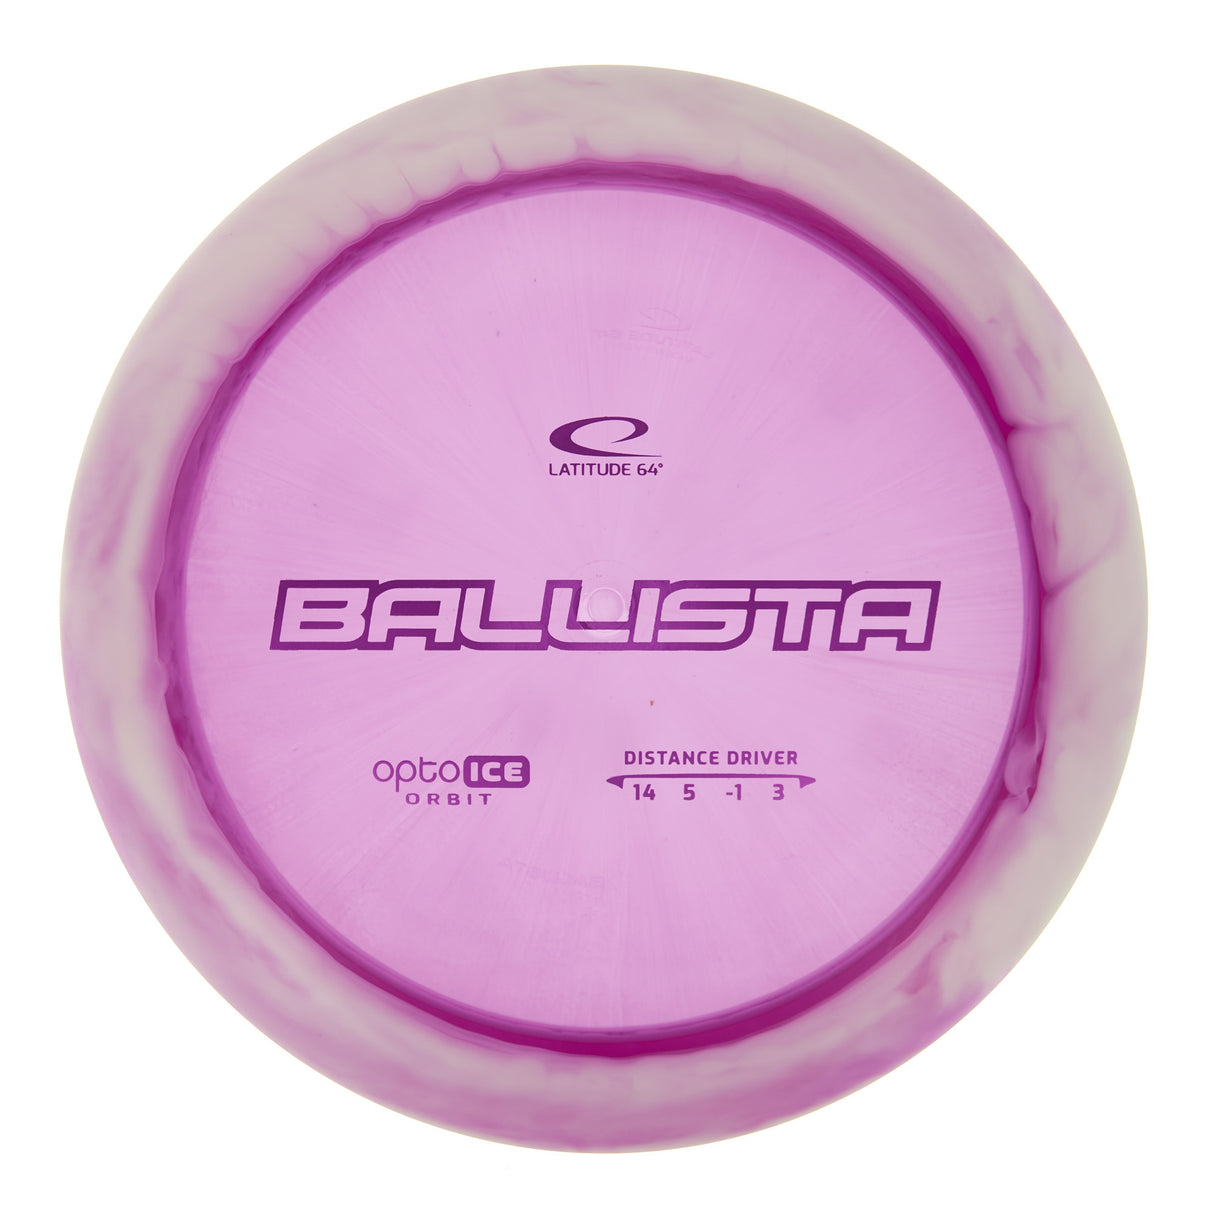 Latitude 64 Ballista - Opto Ice Orbit 174g | Style 0017